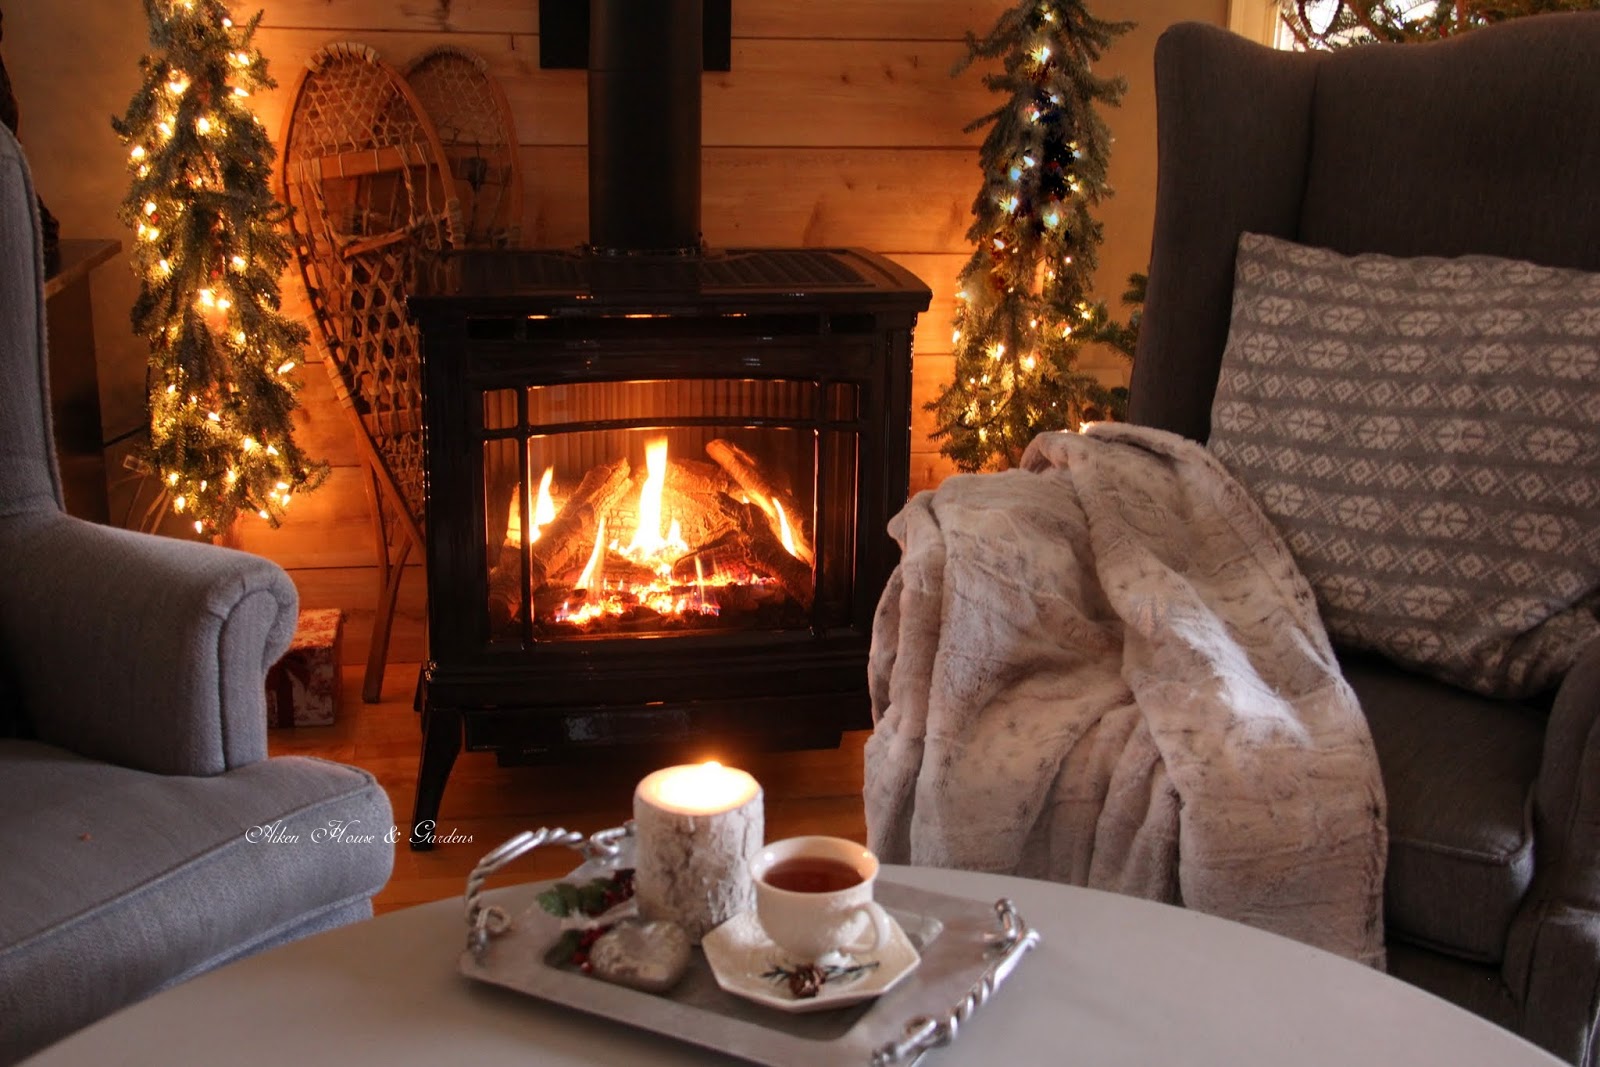 Aiken House & Gardens: Warm & Cozy Fireside Tea